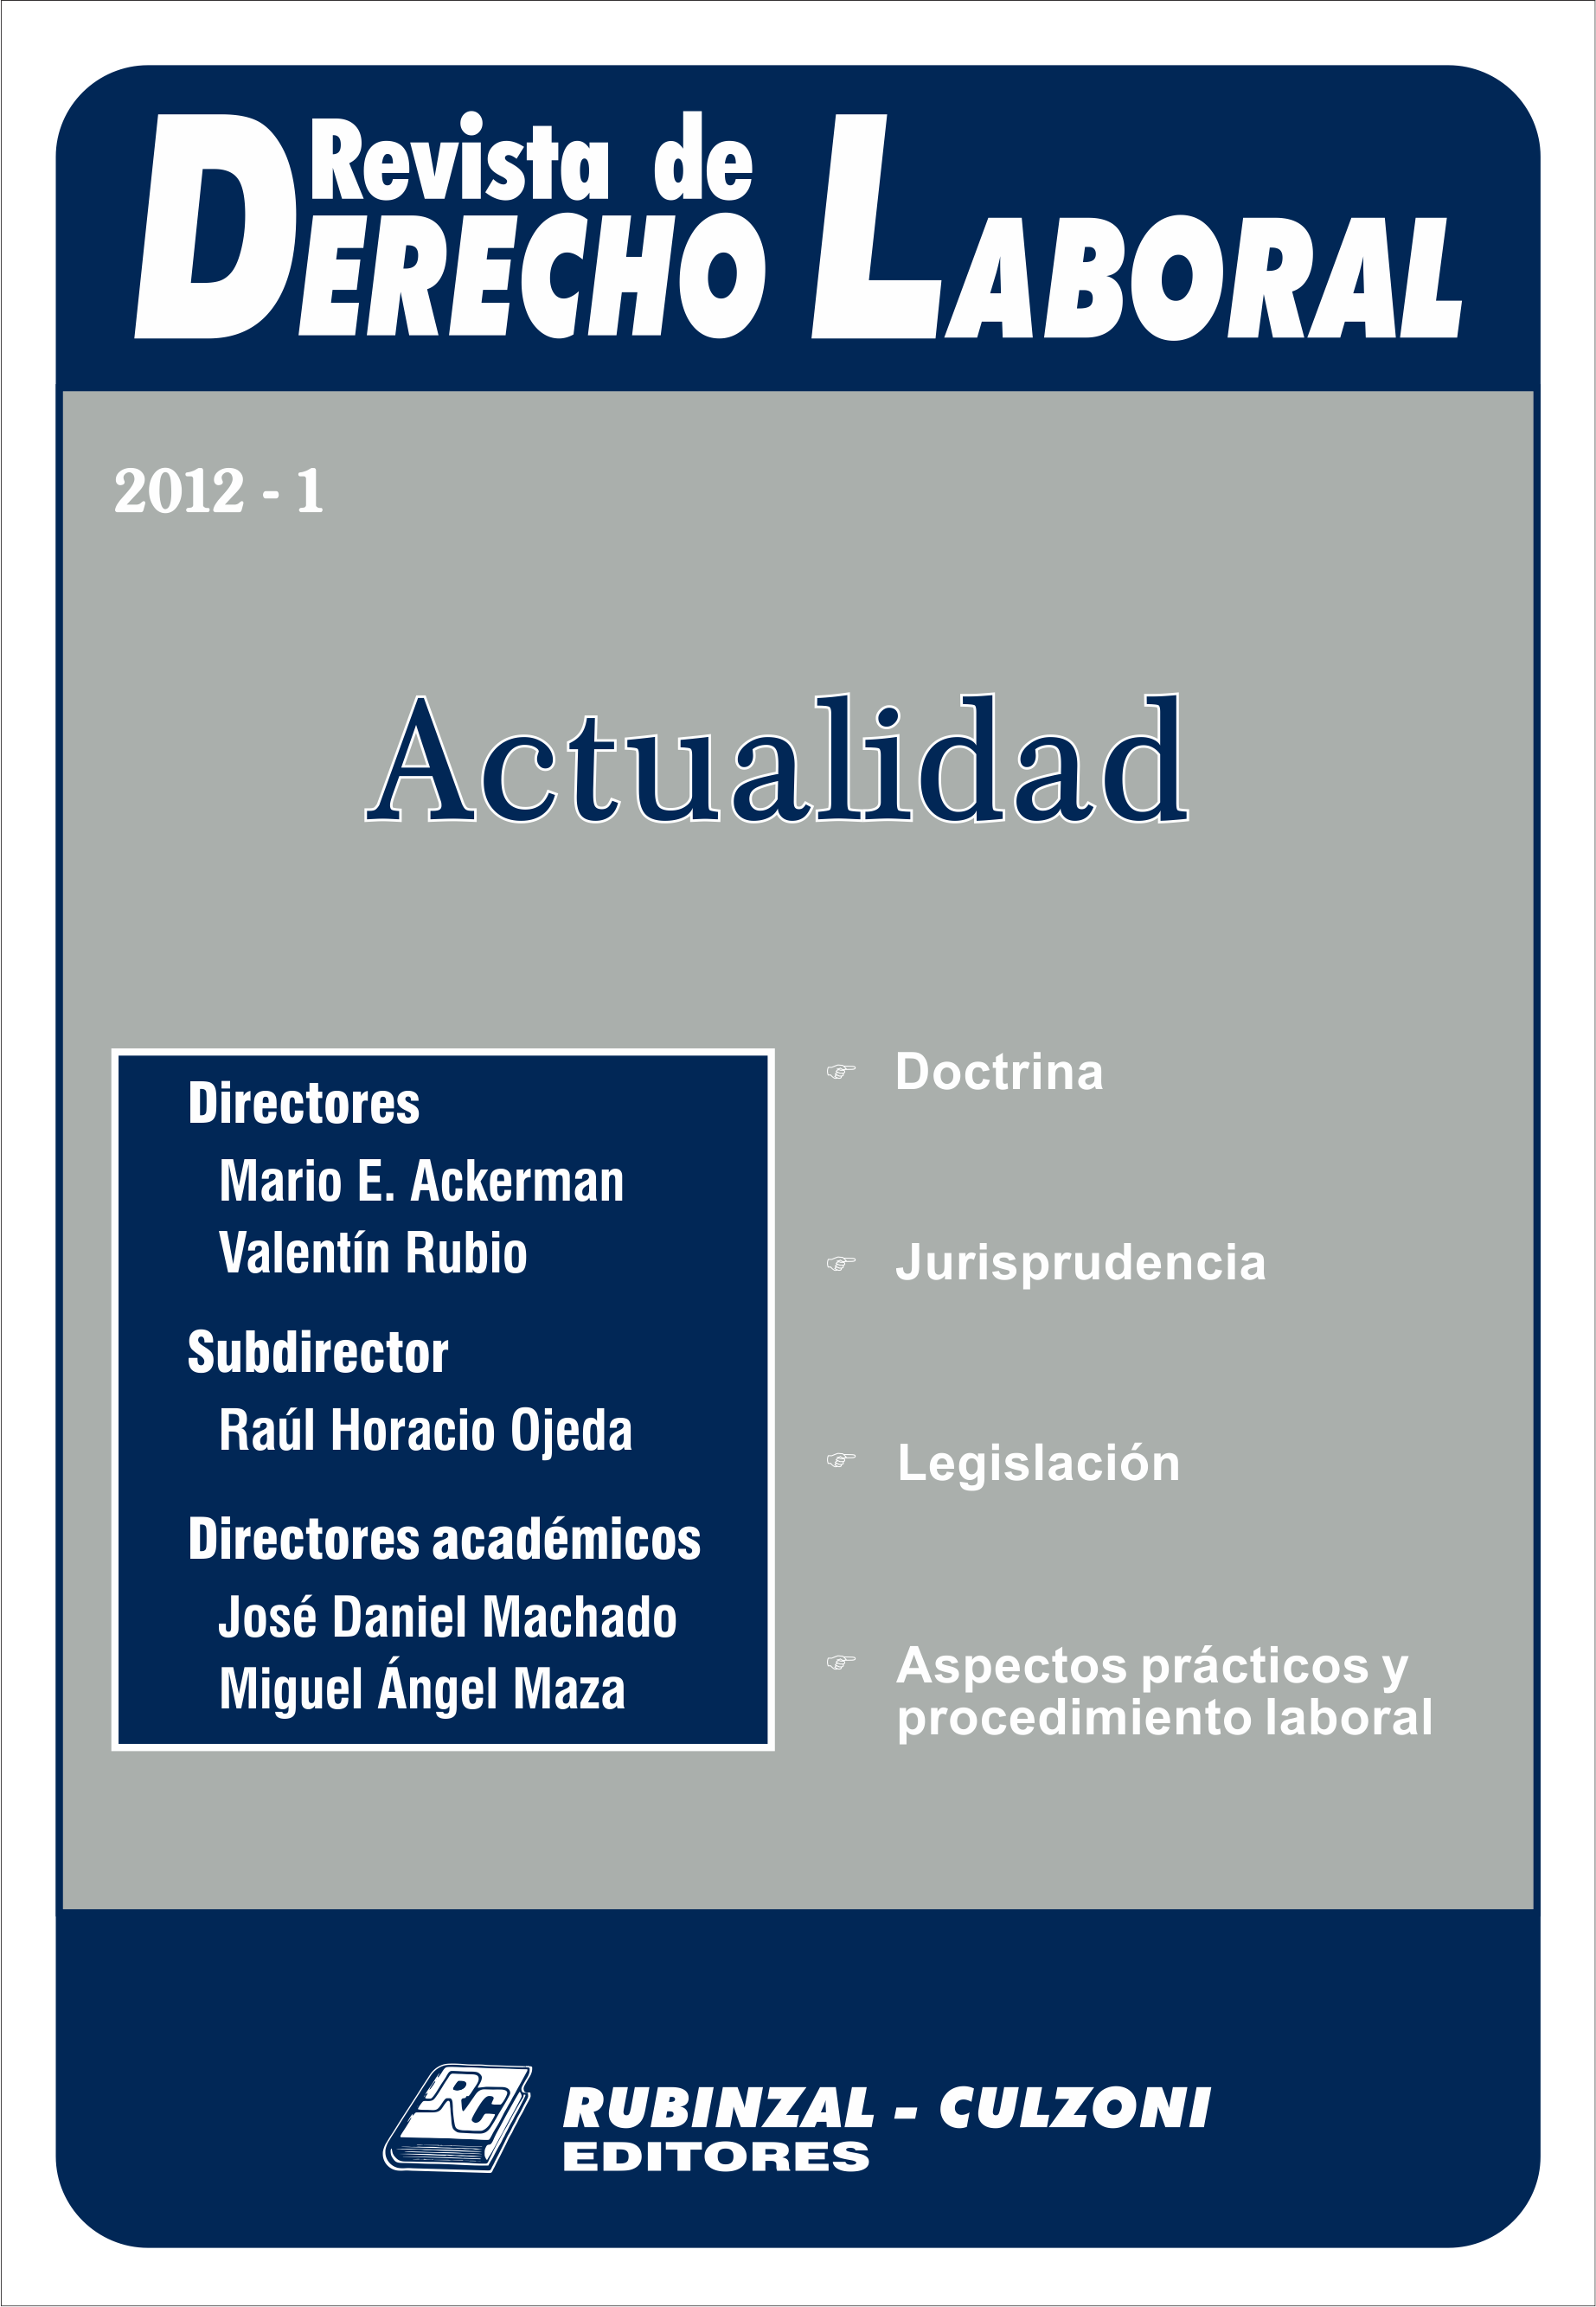  Actualidad - Año 2012 - 1. [2012-1]